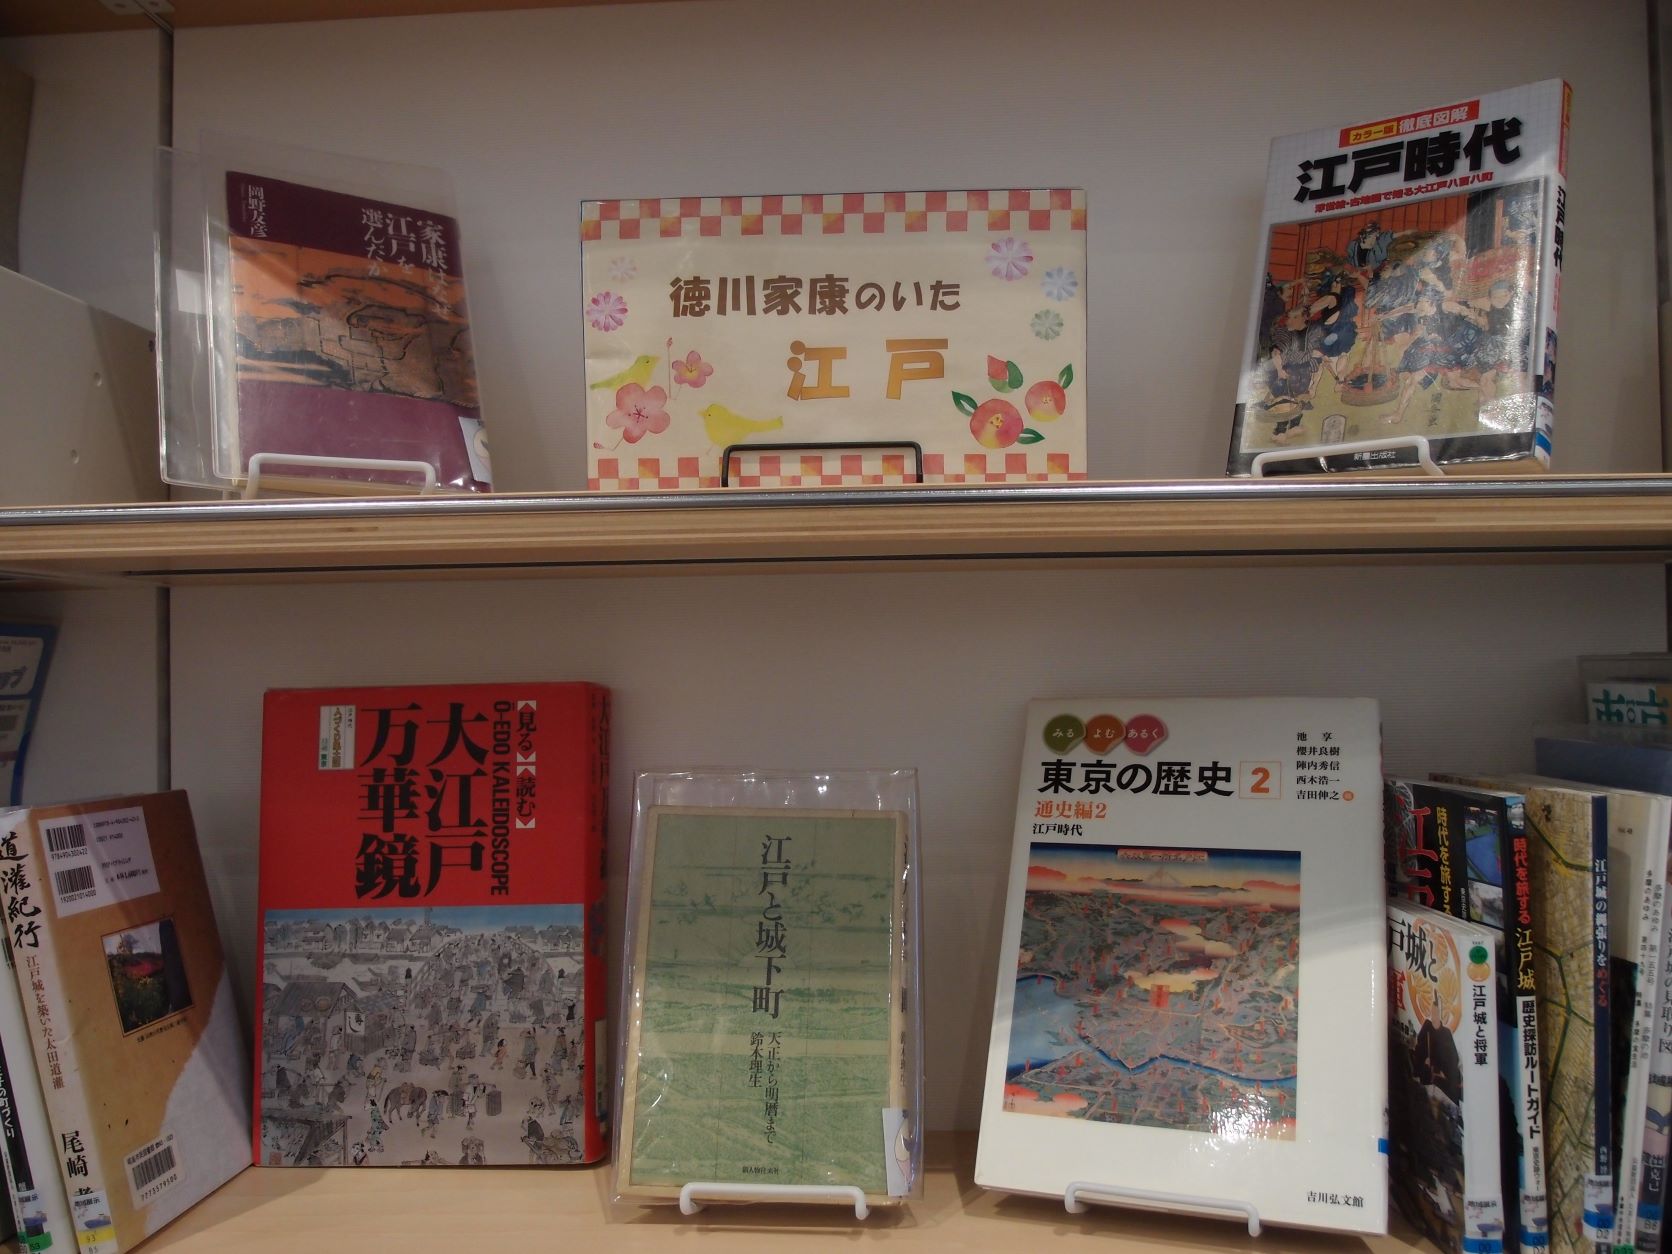 地域展示「徳川家康のいた江戸」の写真。家康に関連する地域資料を展示。